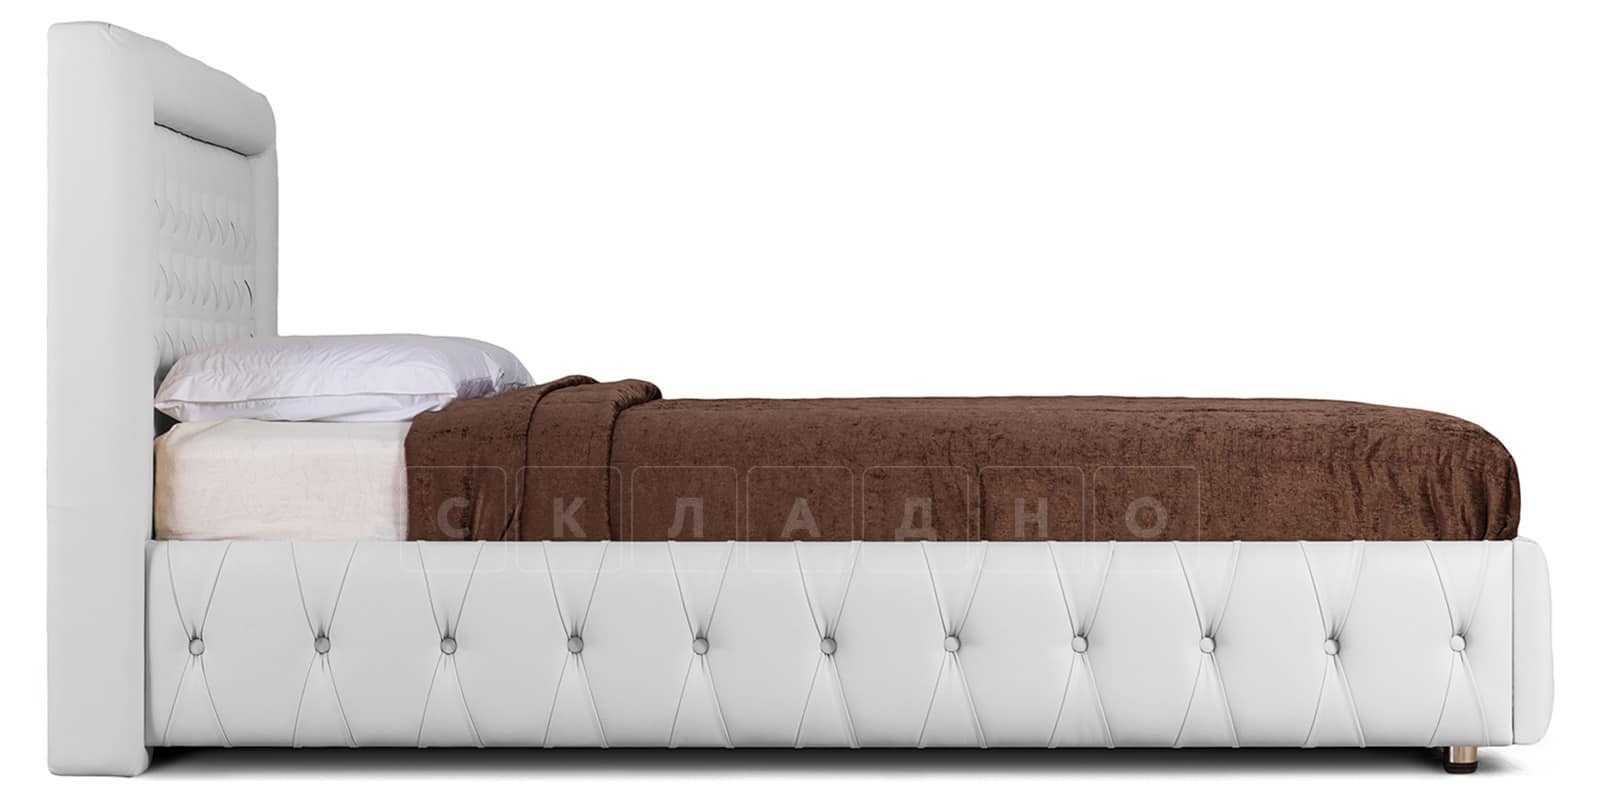 Мягкая кровать Малибу 160см экокожа белого цвета вариант 7-2 фото 3 | интернет-магазин Складно